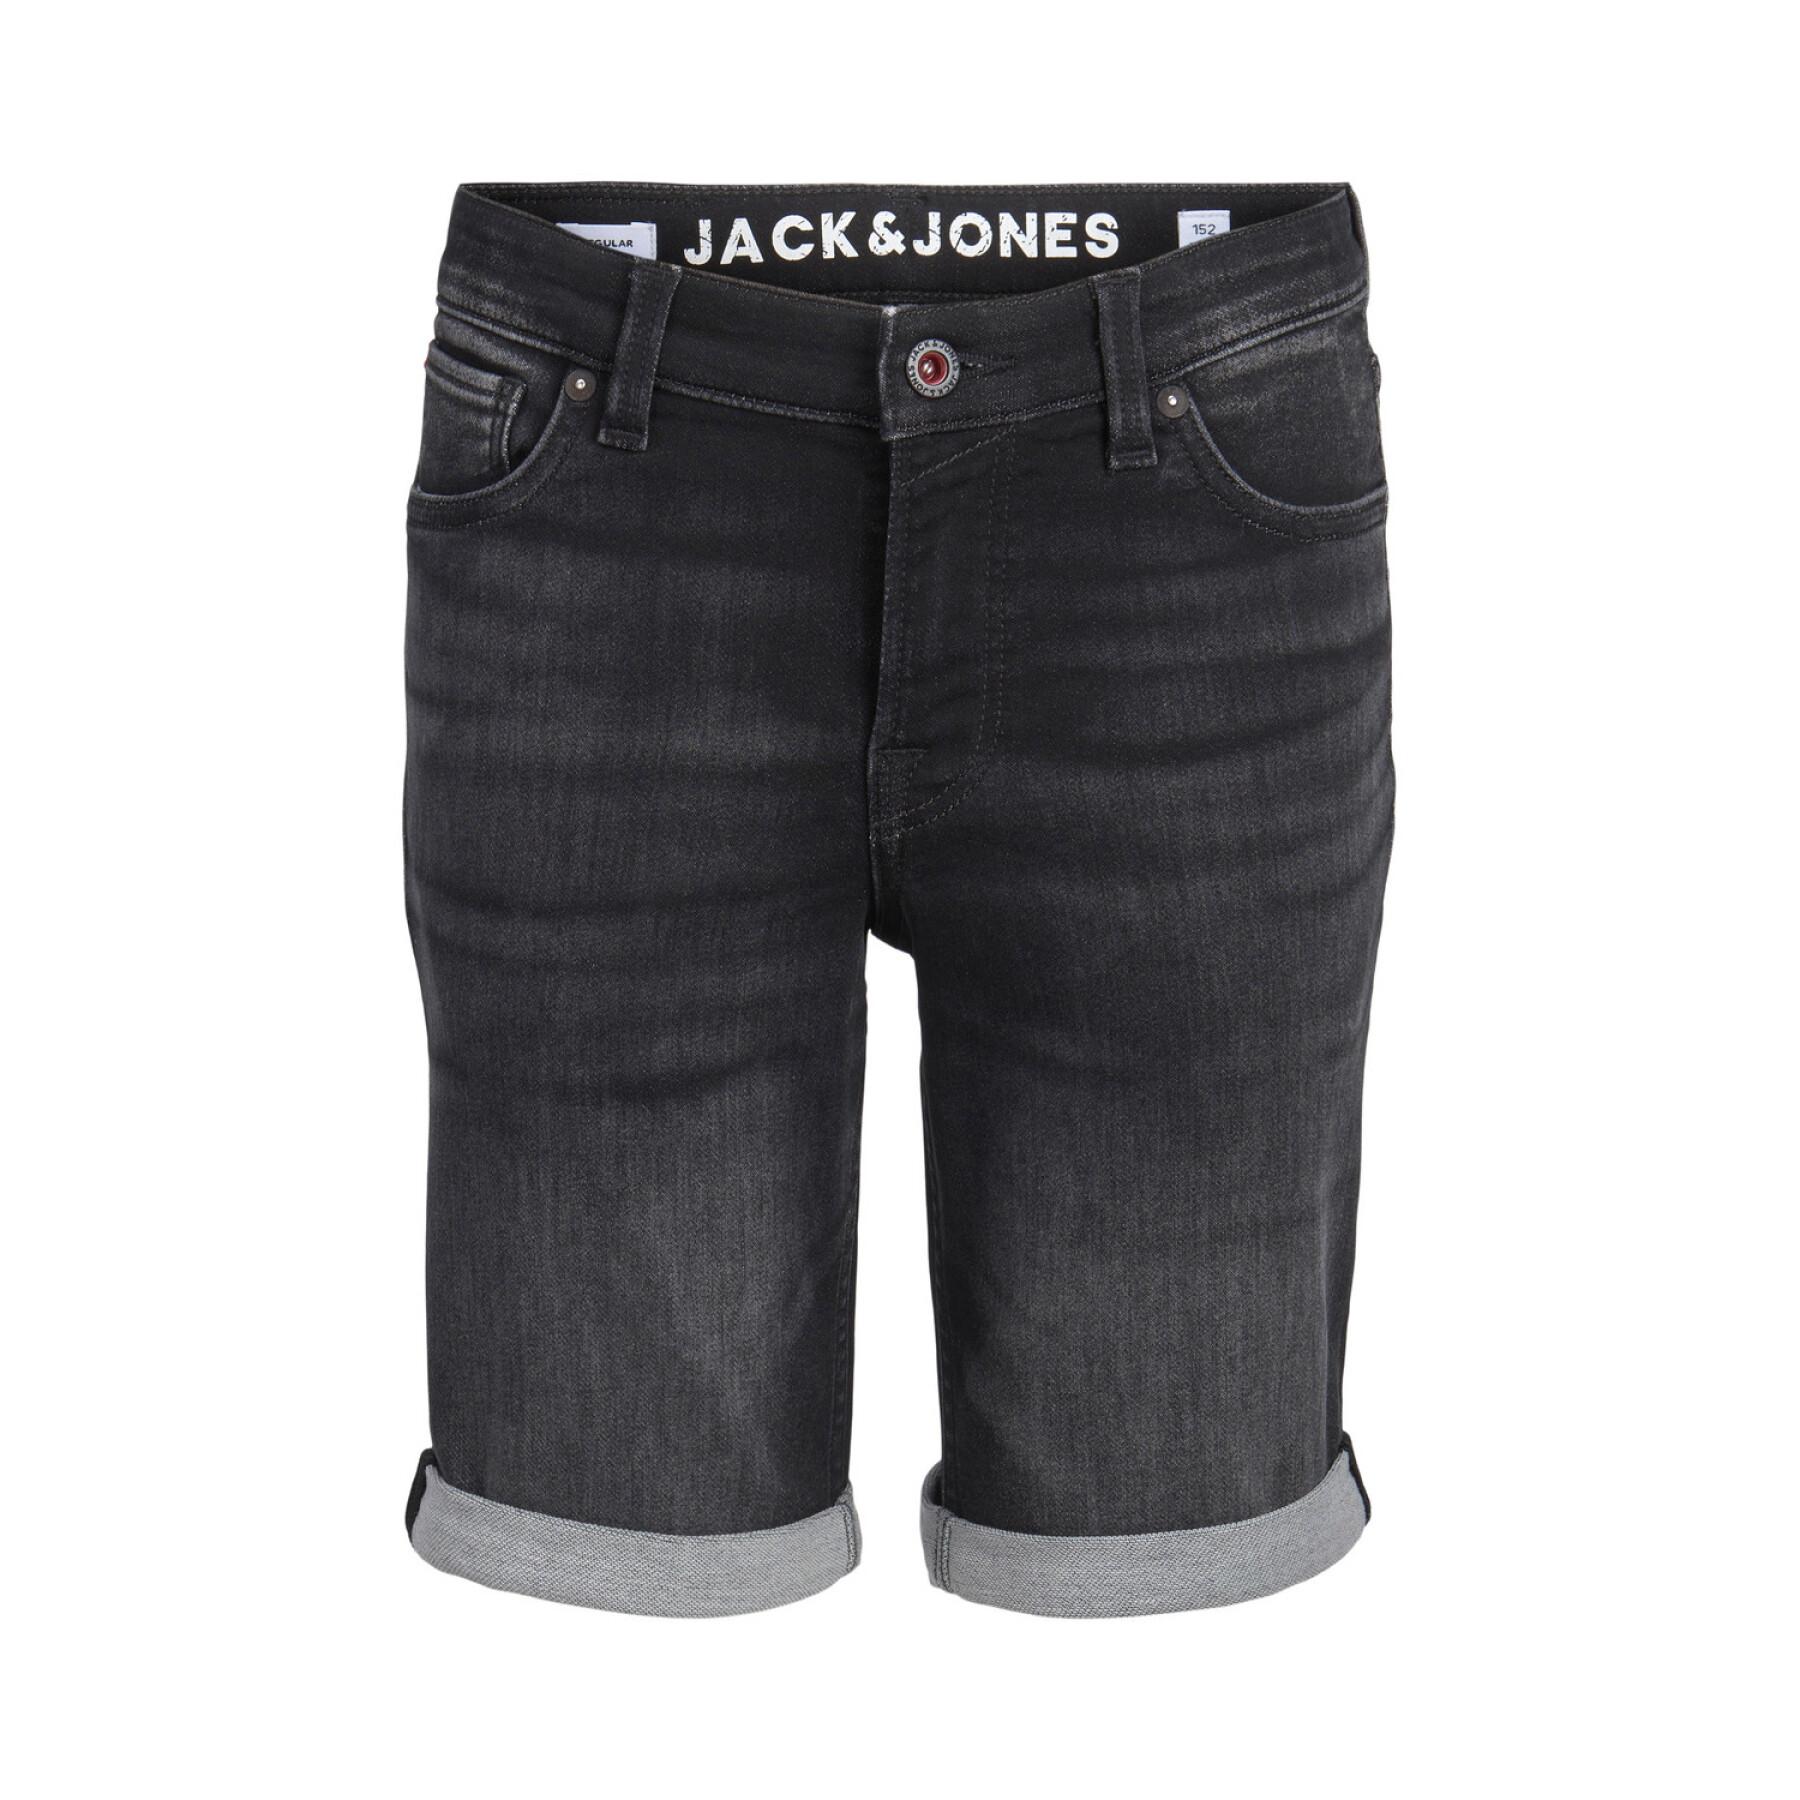 Children's shorts Jack & Jones Rick Con Ge 708 IK